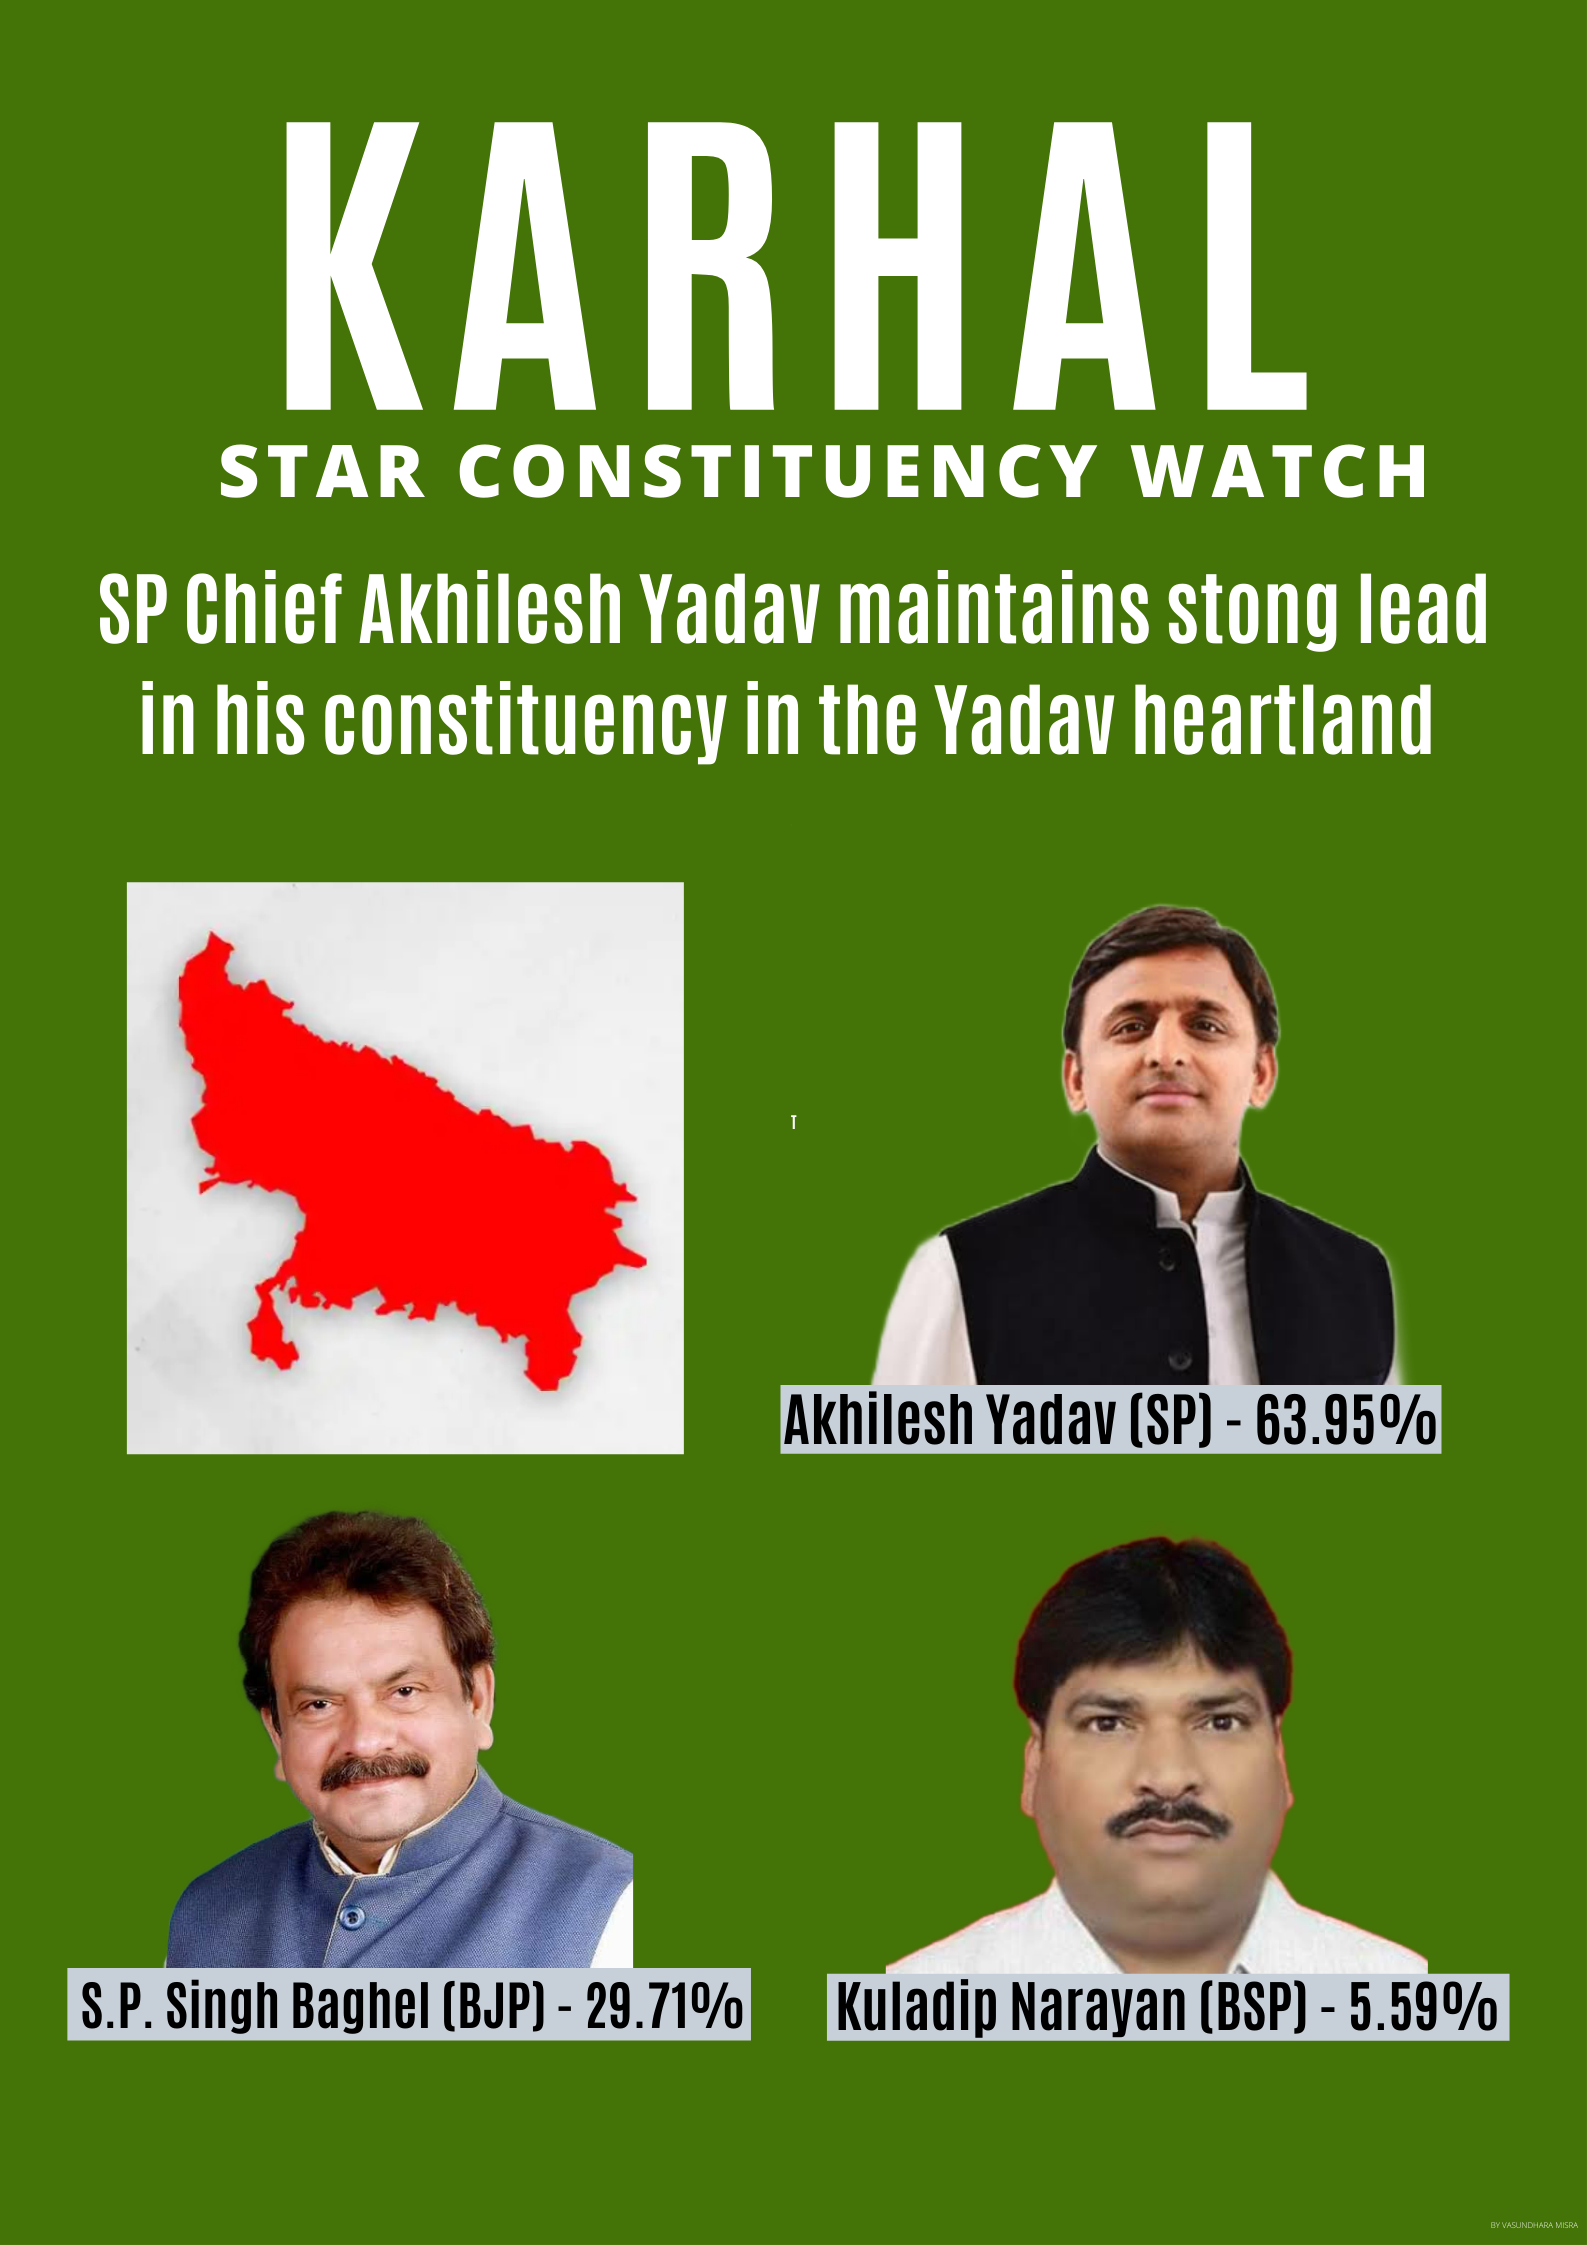 Vasundhara Misra_UP_Karhal Candidate Watch (1)